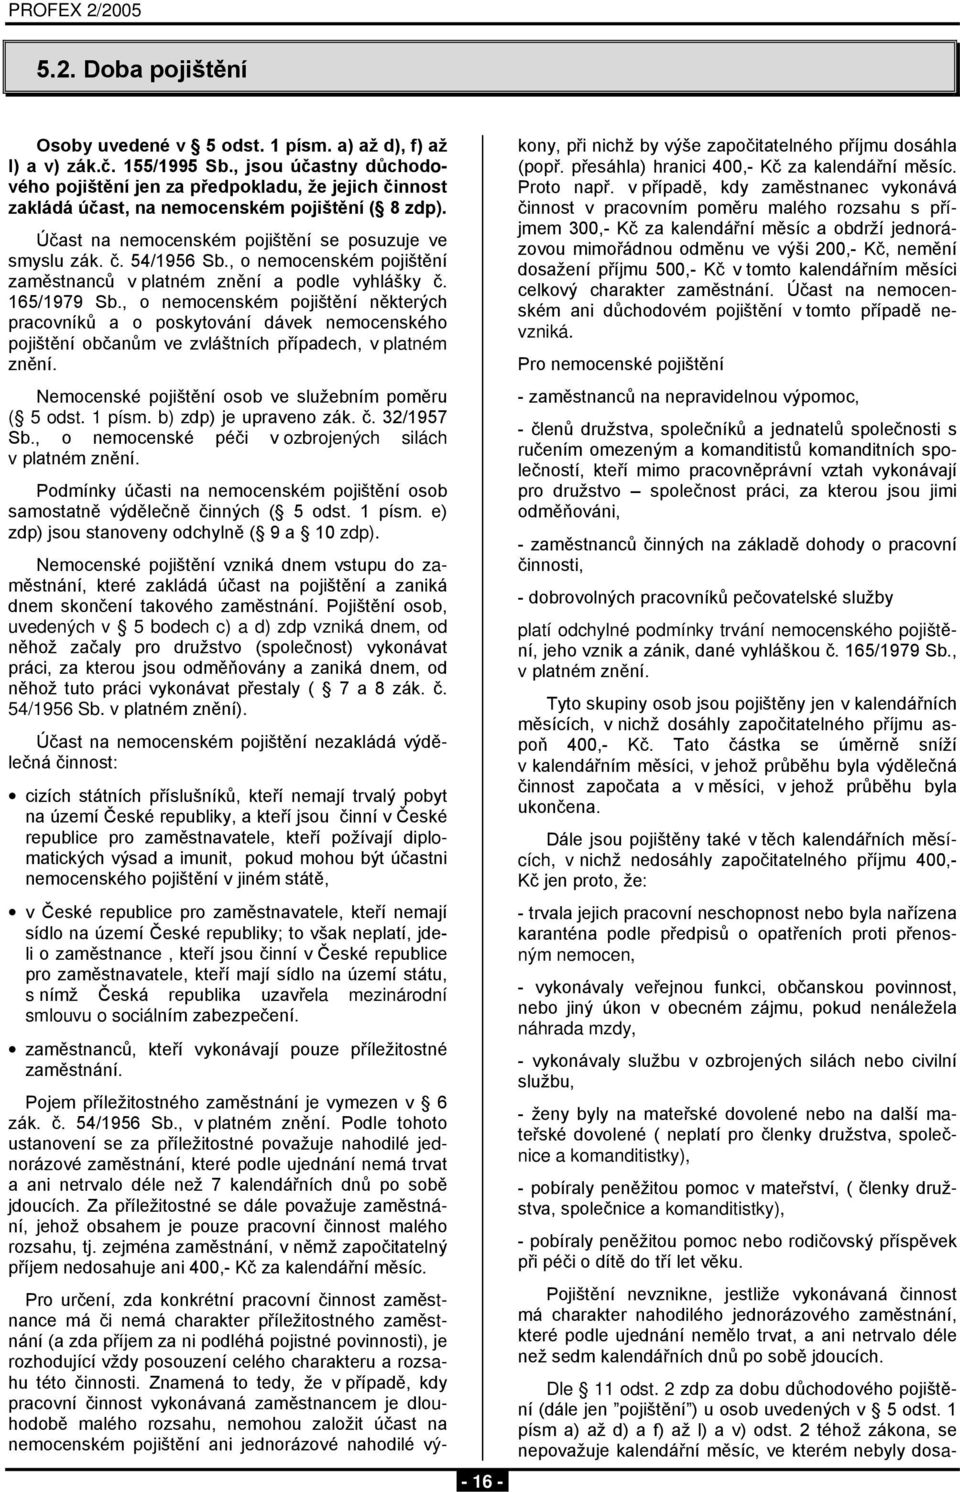 , o nemocenském pojištění zaměstnanců v platném znění a podle vyhlášky č. 165/1979 Sb.